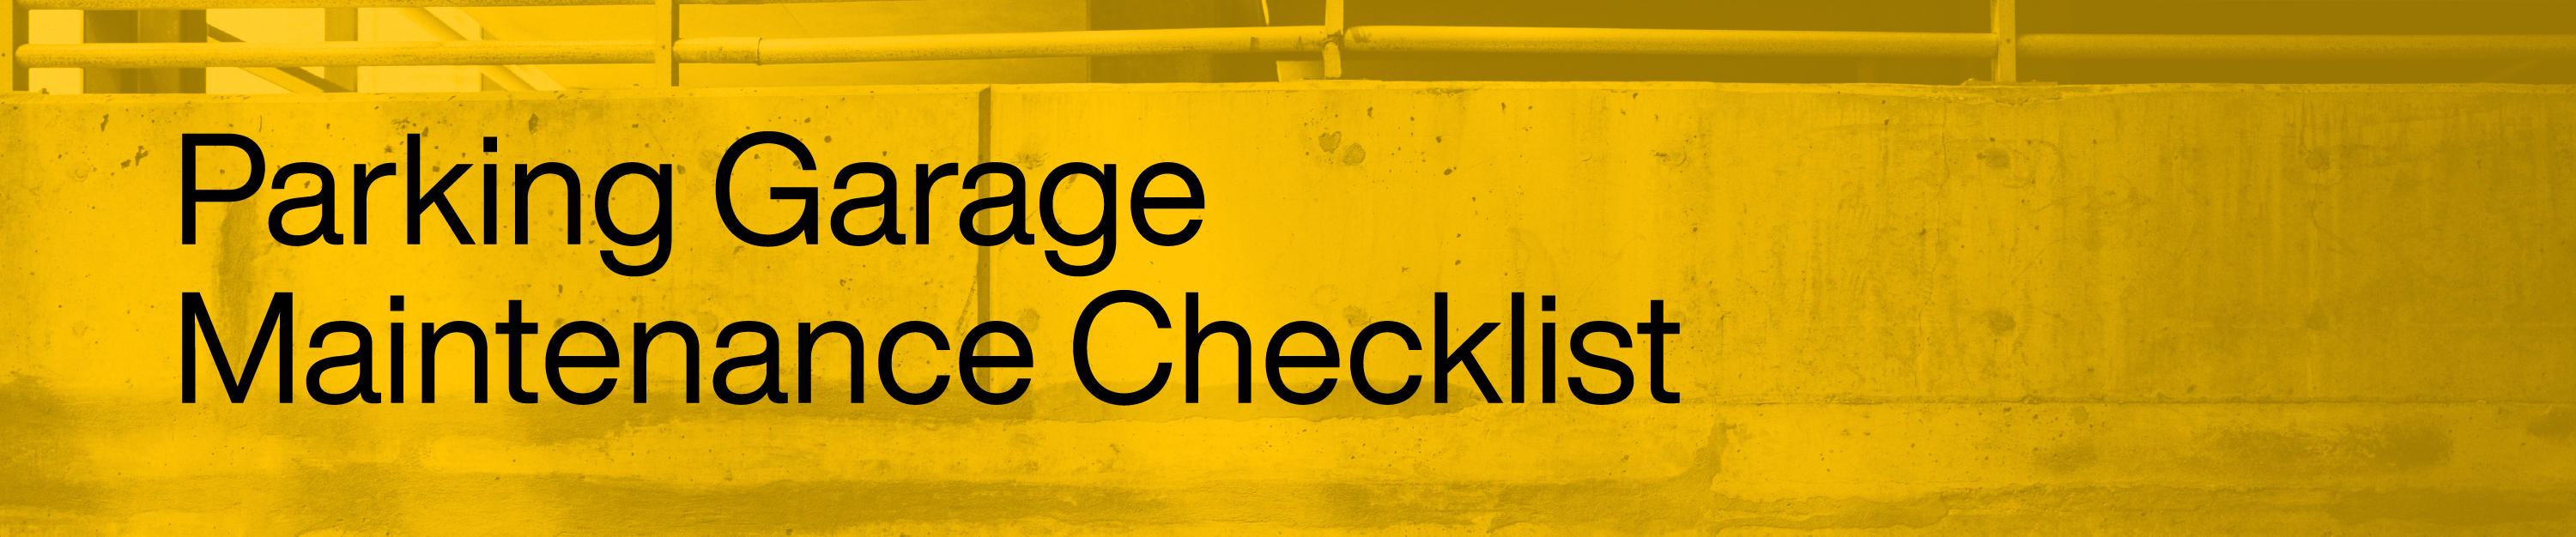 Parking Garage Maintenance Checklist